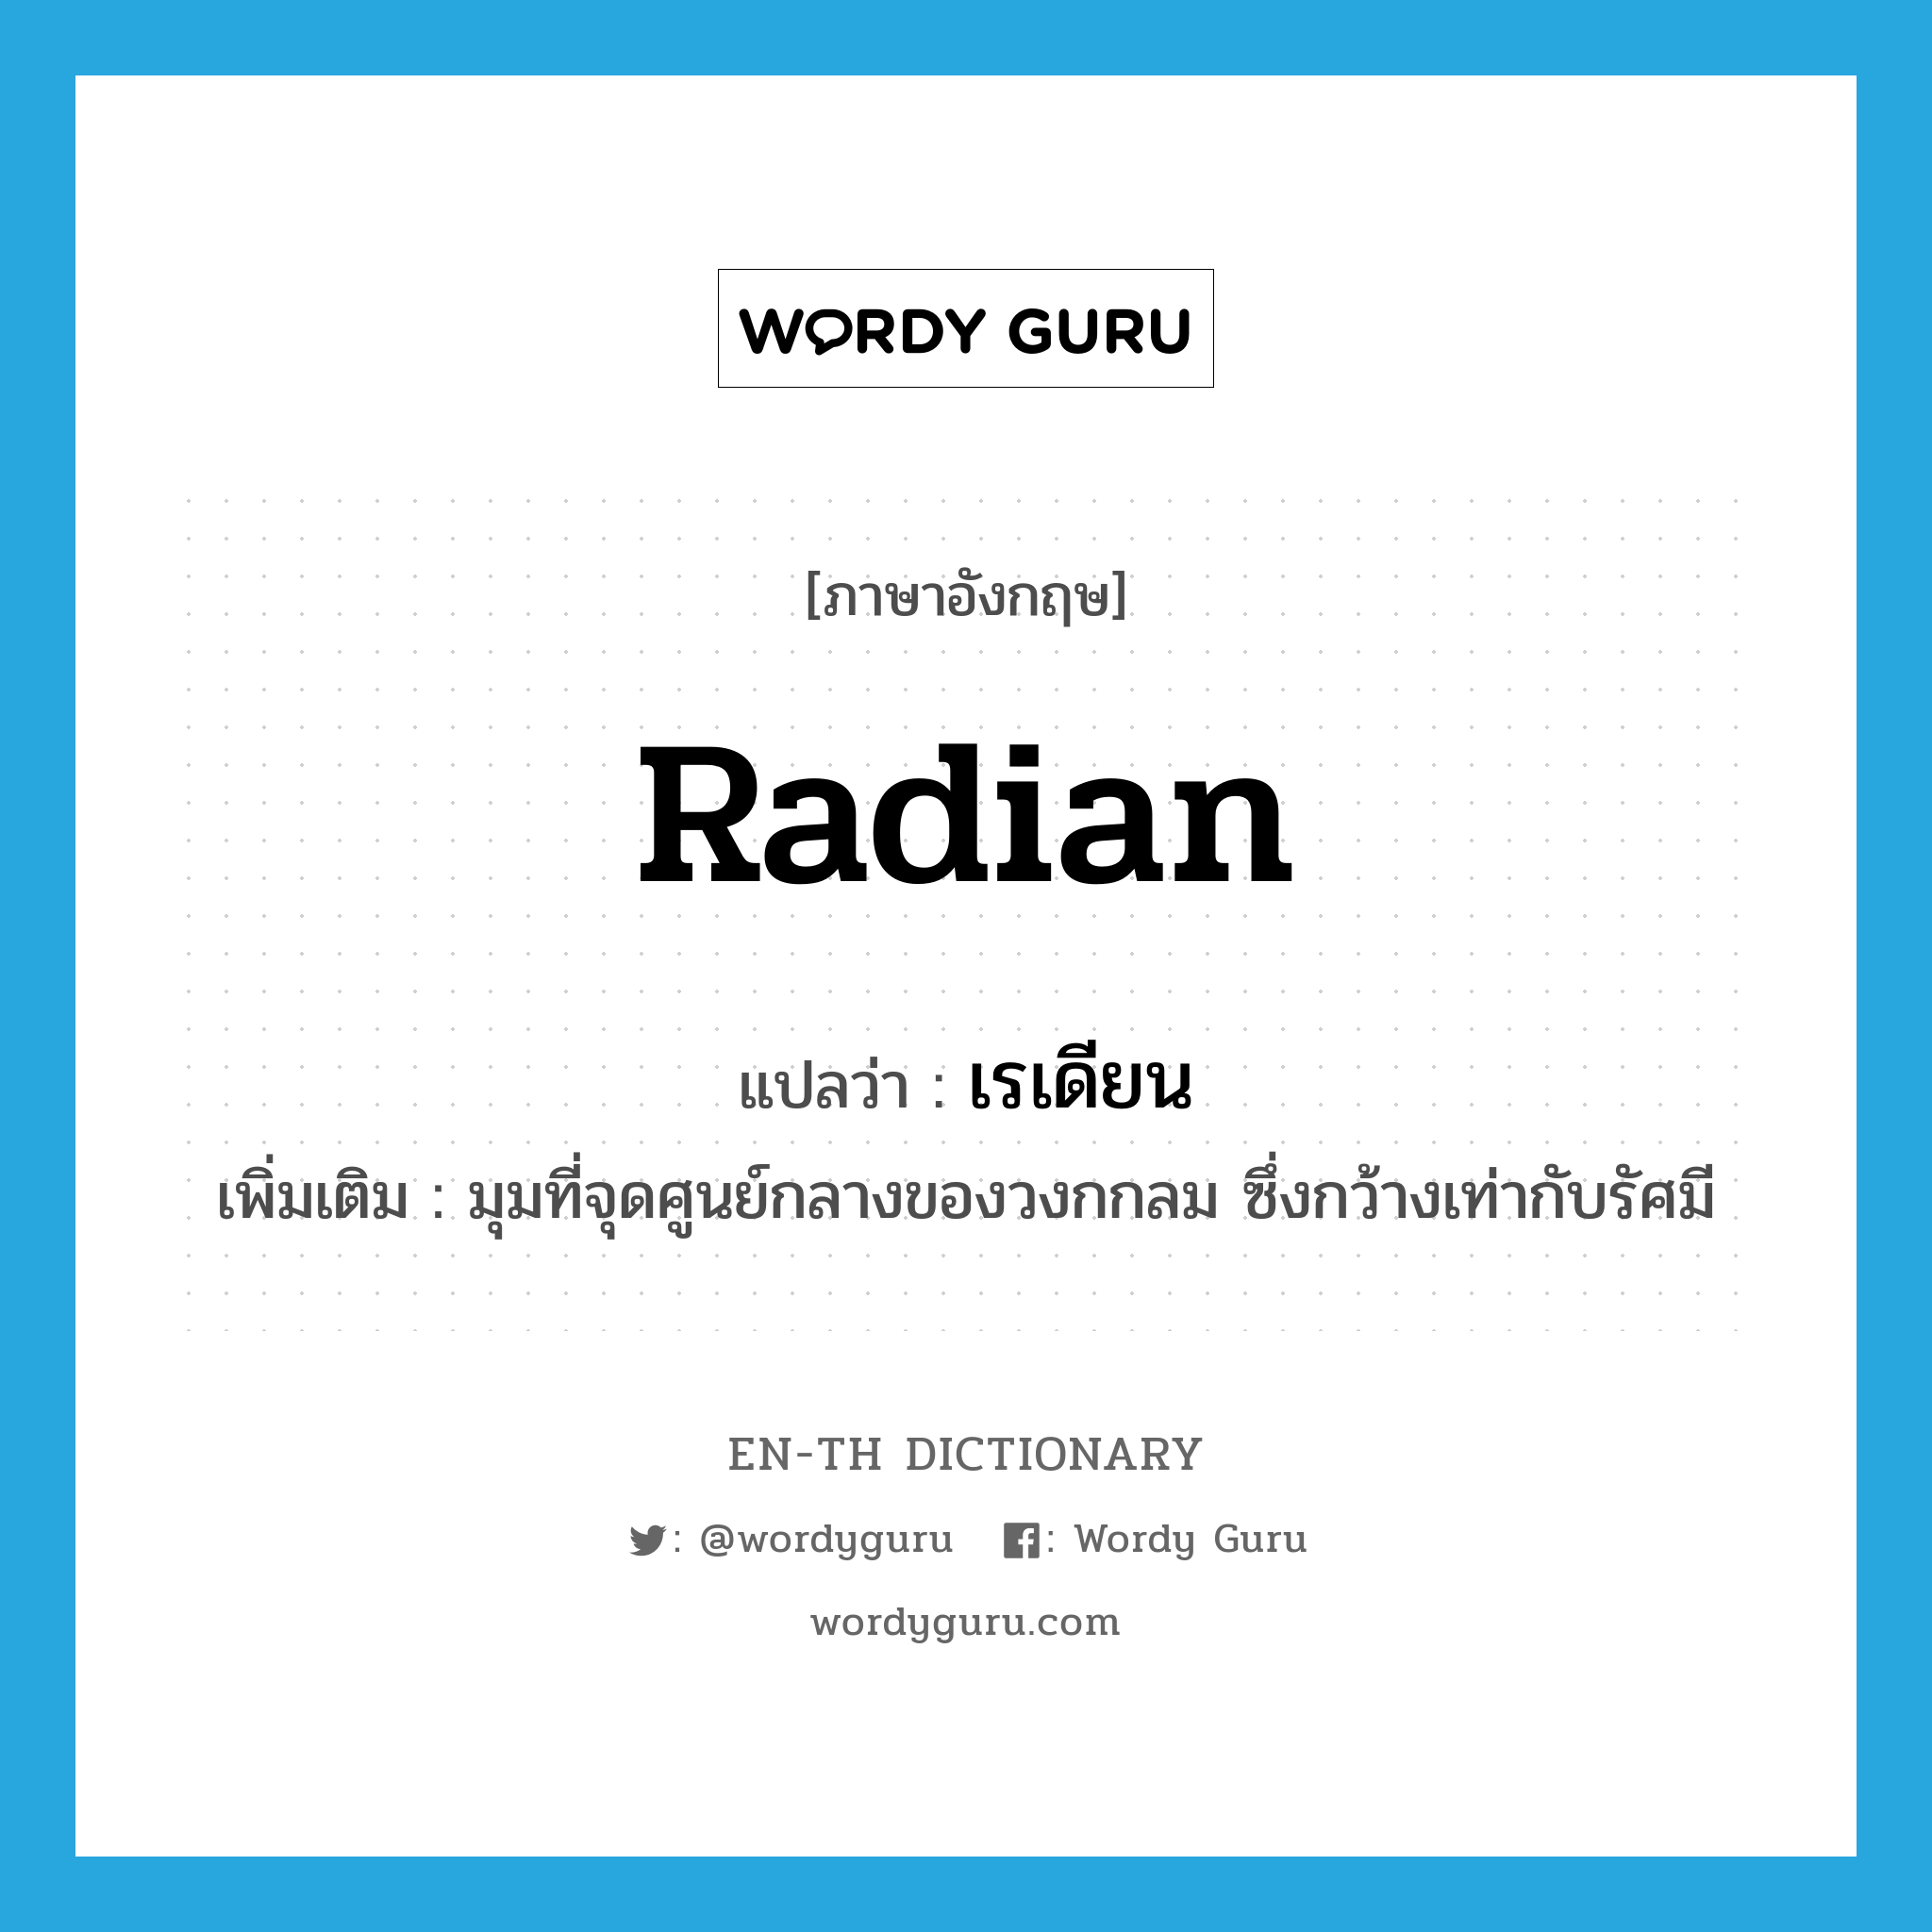 radian แปลว่า?, คำศัพท์ภาษาอังกฤษ radian แปลว่า เรเดียน ประเภท N เพิ่มเติม มุมที่จุดศูนย์กลางของวงกกลม ซึ่งกว้างเท่ากับรัศมี หมวด N